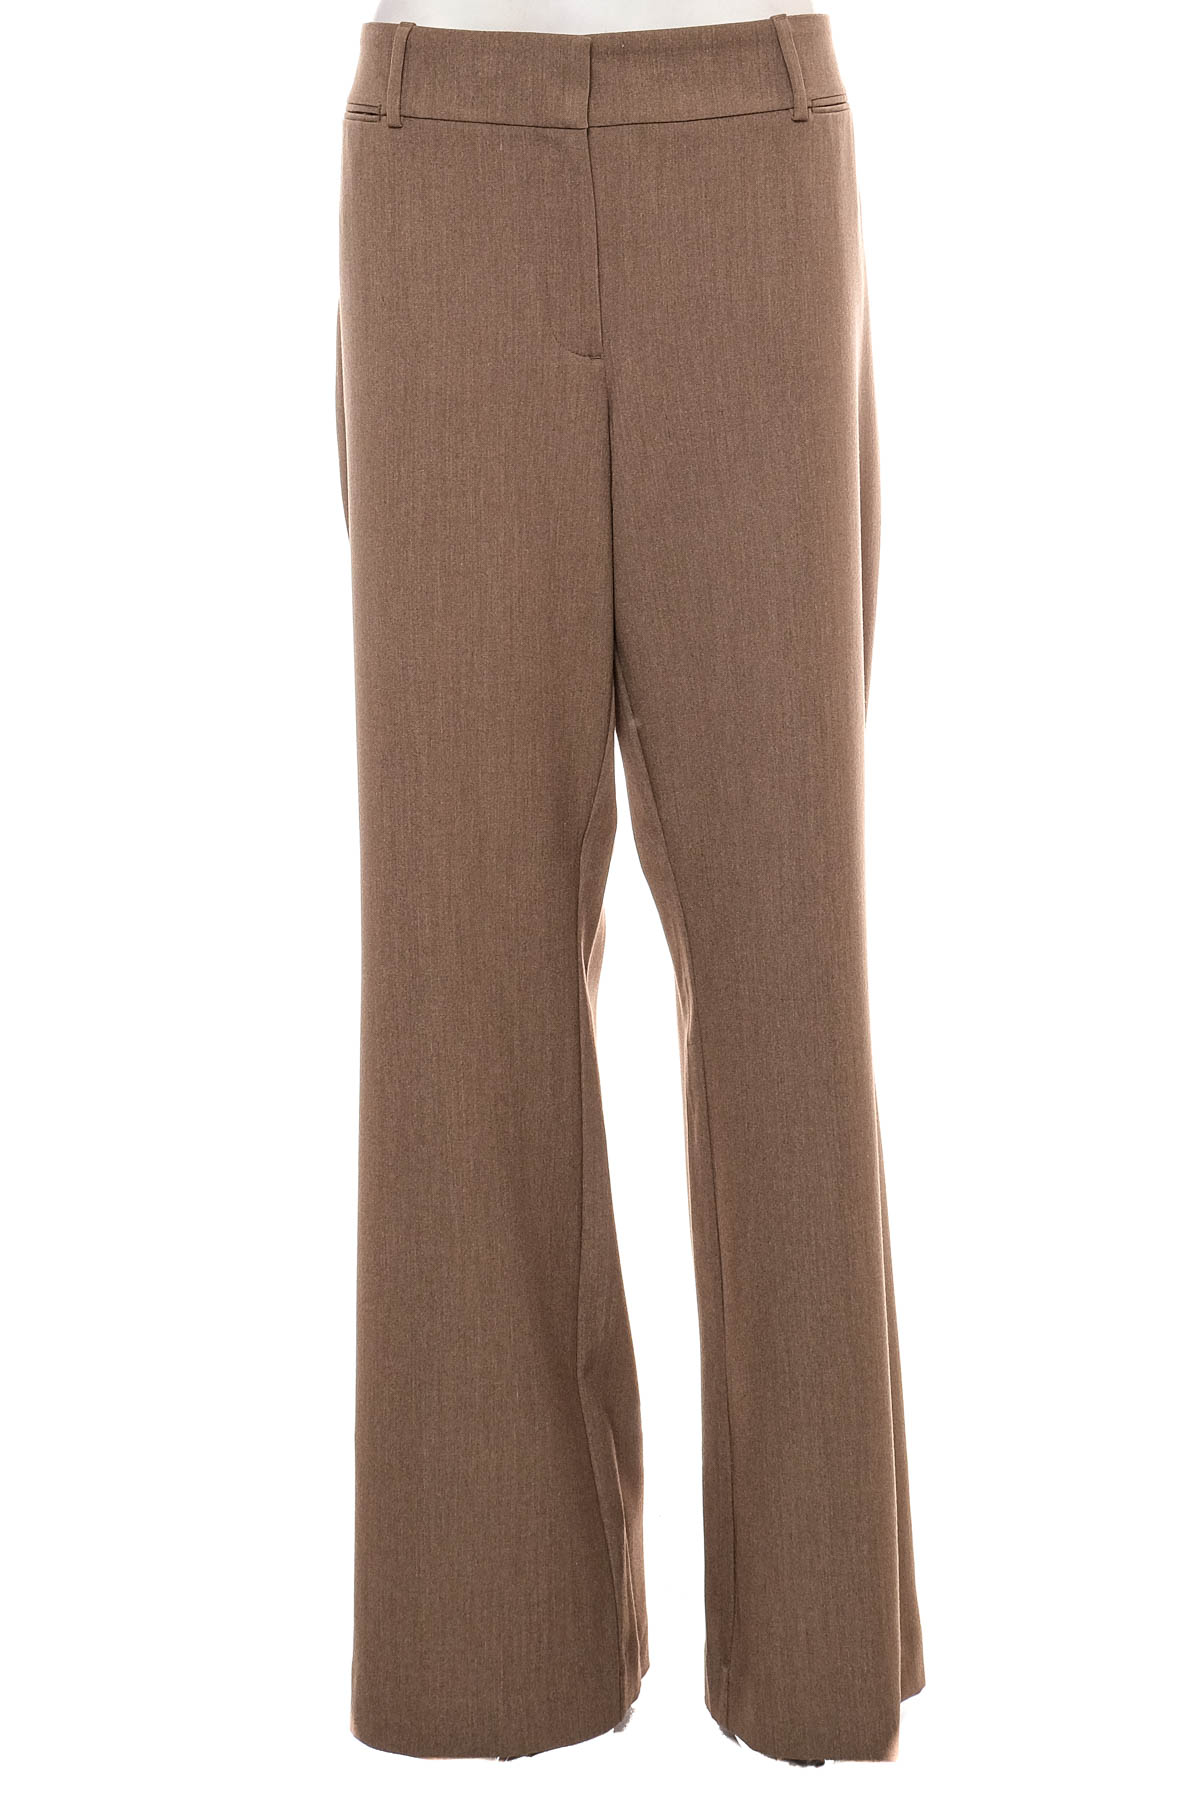 Women's trousers - LOFT - 0